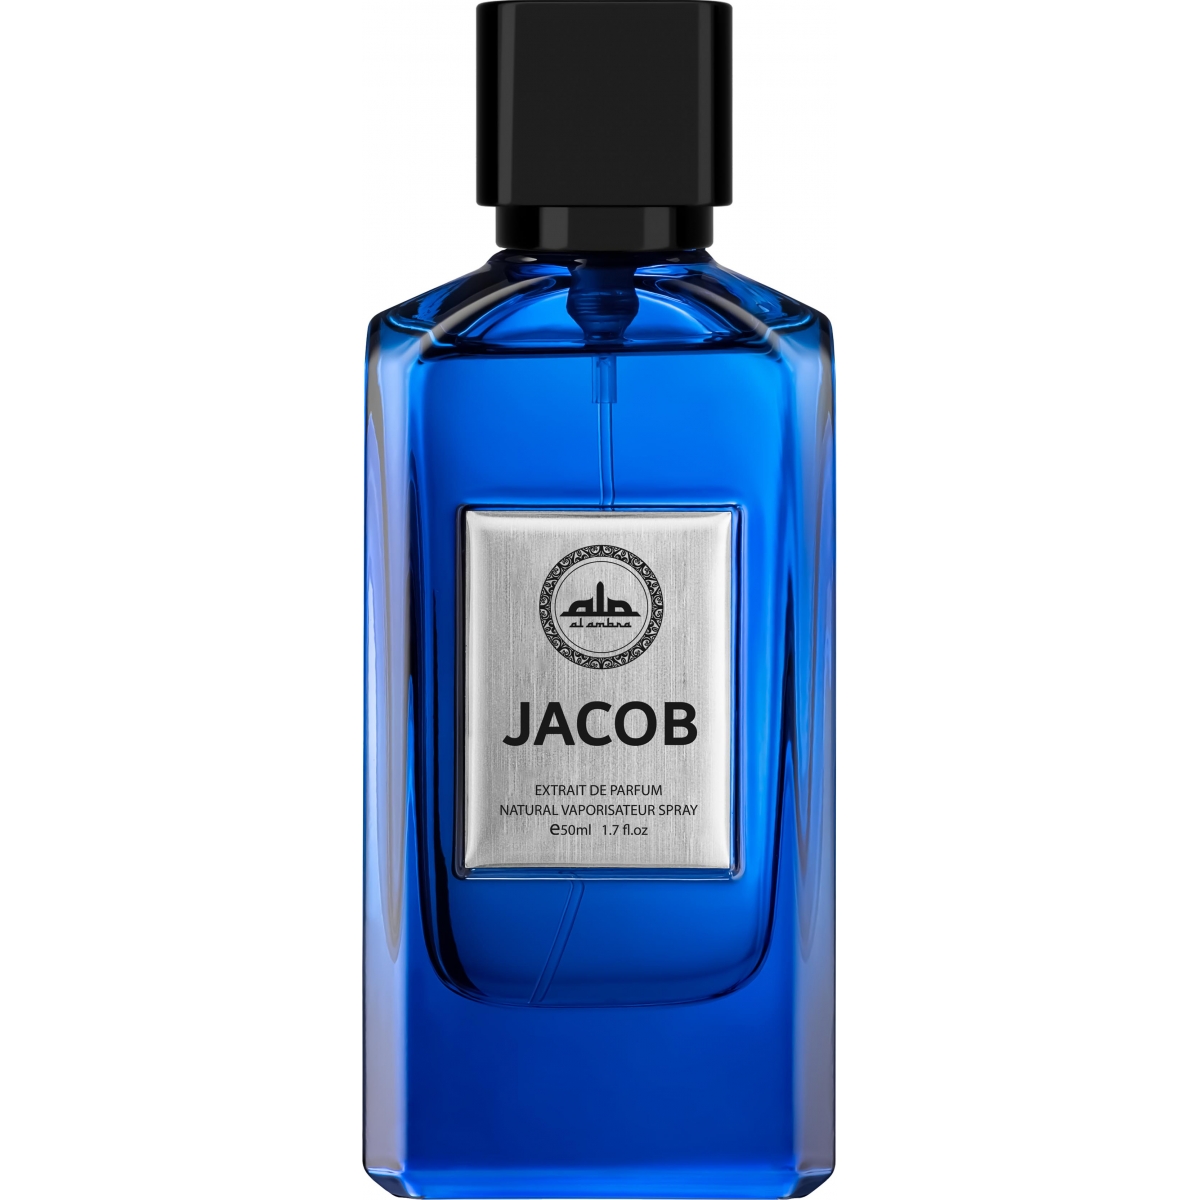 Jacob Al Ambra Perfumes Perfumes, Unisex Perfumes, Arada Perfumes